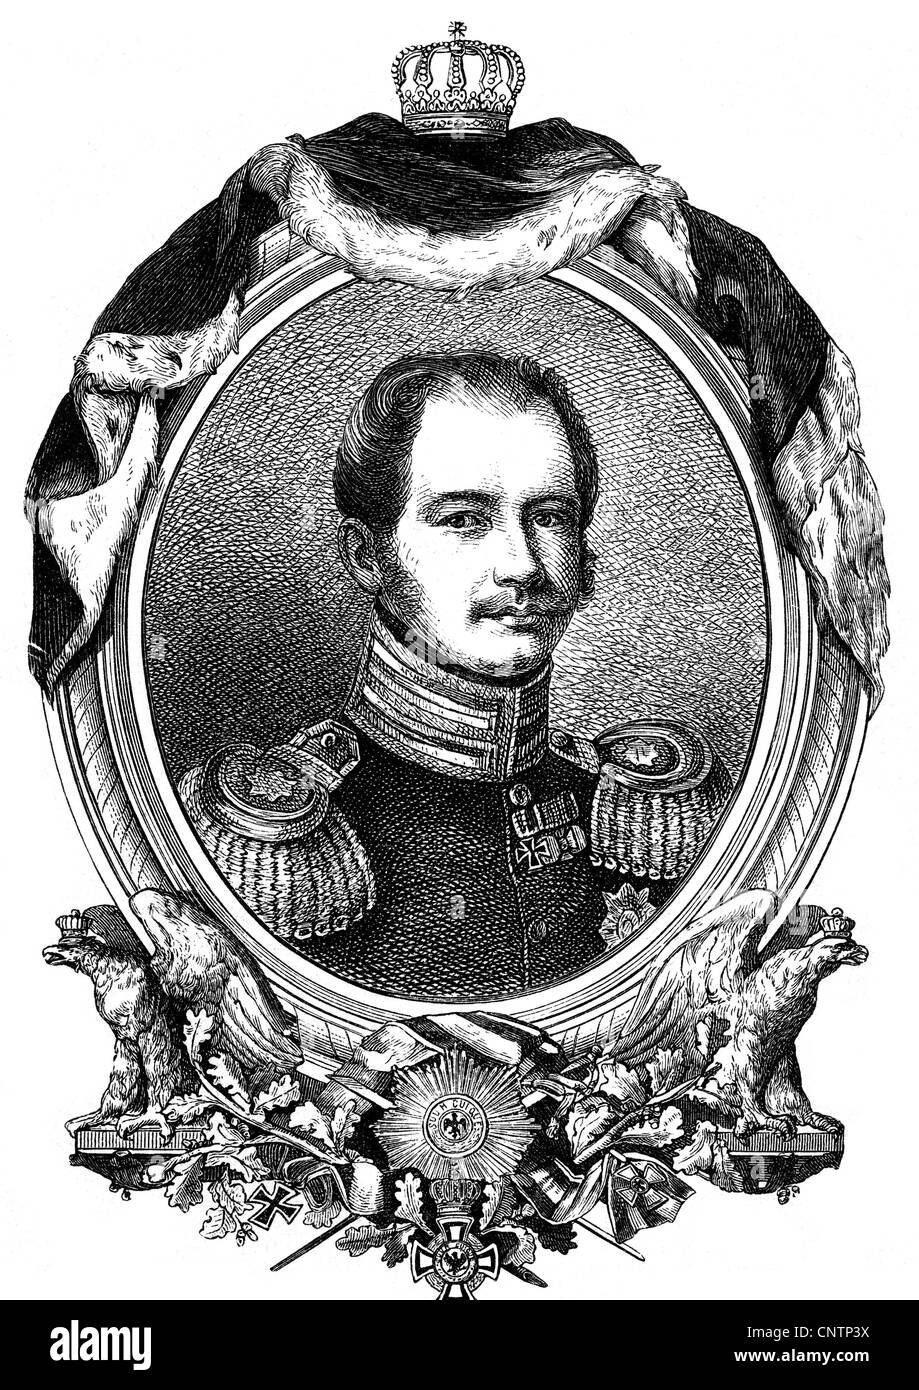 Wilhelm, 3.7.1783 - 28.9.1851, Prinz von Preßburg, preussischer General, Landeshauptmann der Rheinprovinz und Westfalen von 1830 - 1831, Porträt, Holzgravur, 1831, Stockfoto